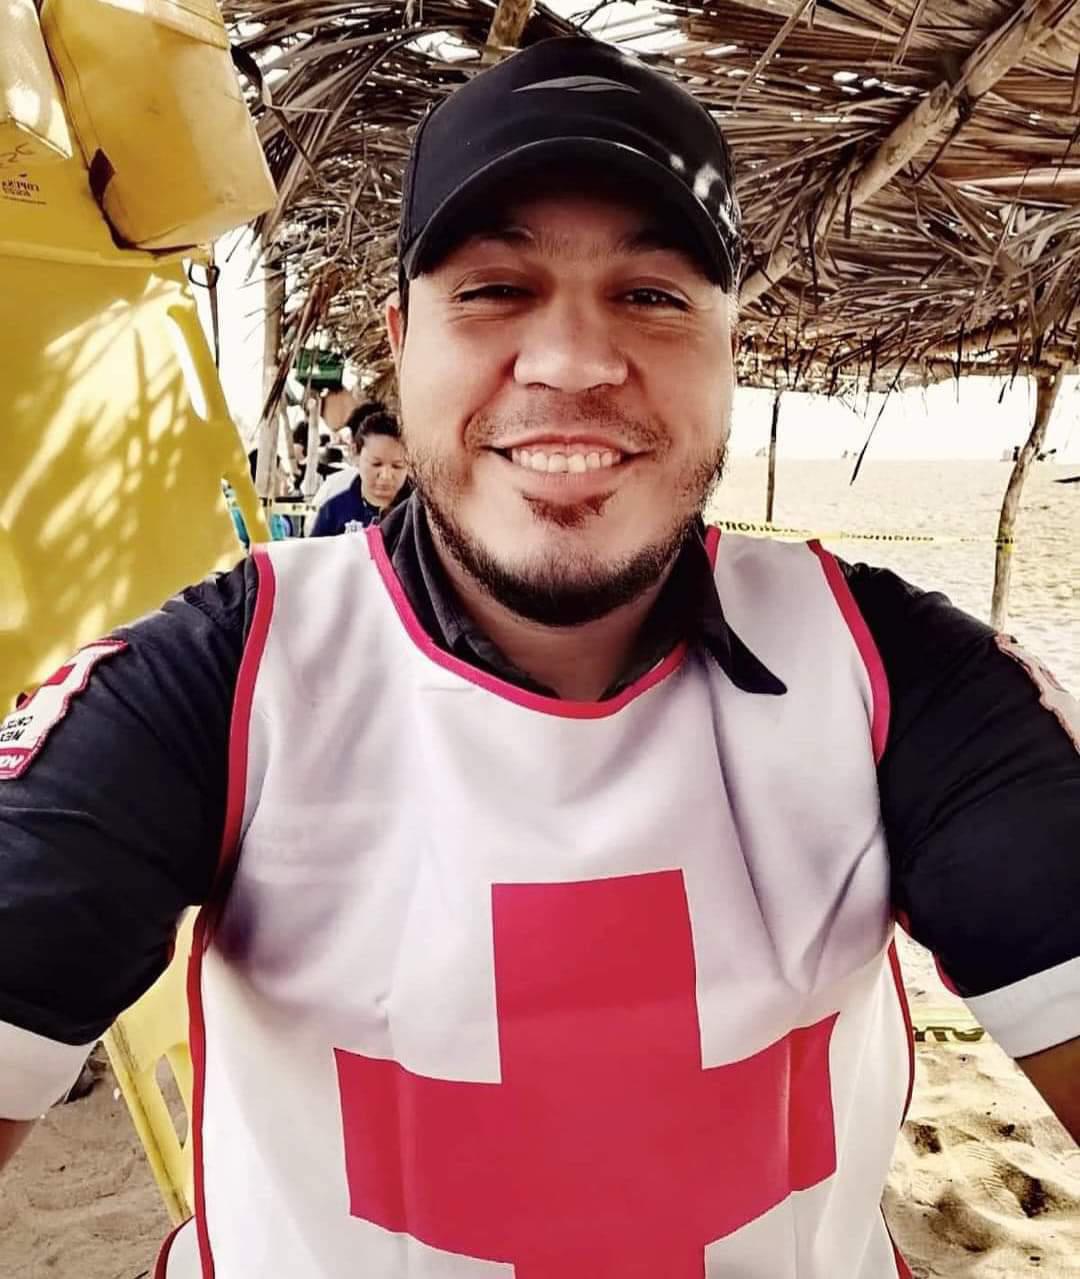 $!Sonarán sirenas de la Cruz Roja de Escuinapa para despedir a Luis Alfredo